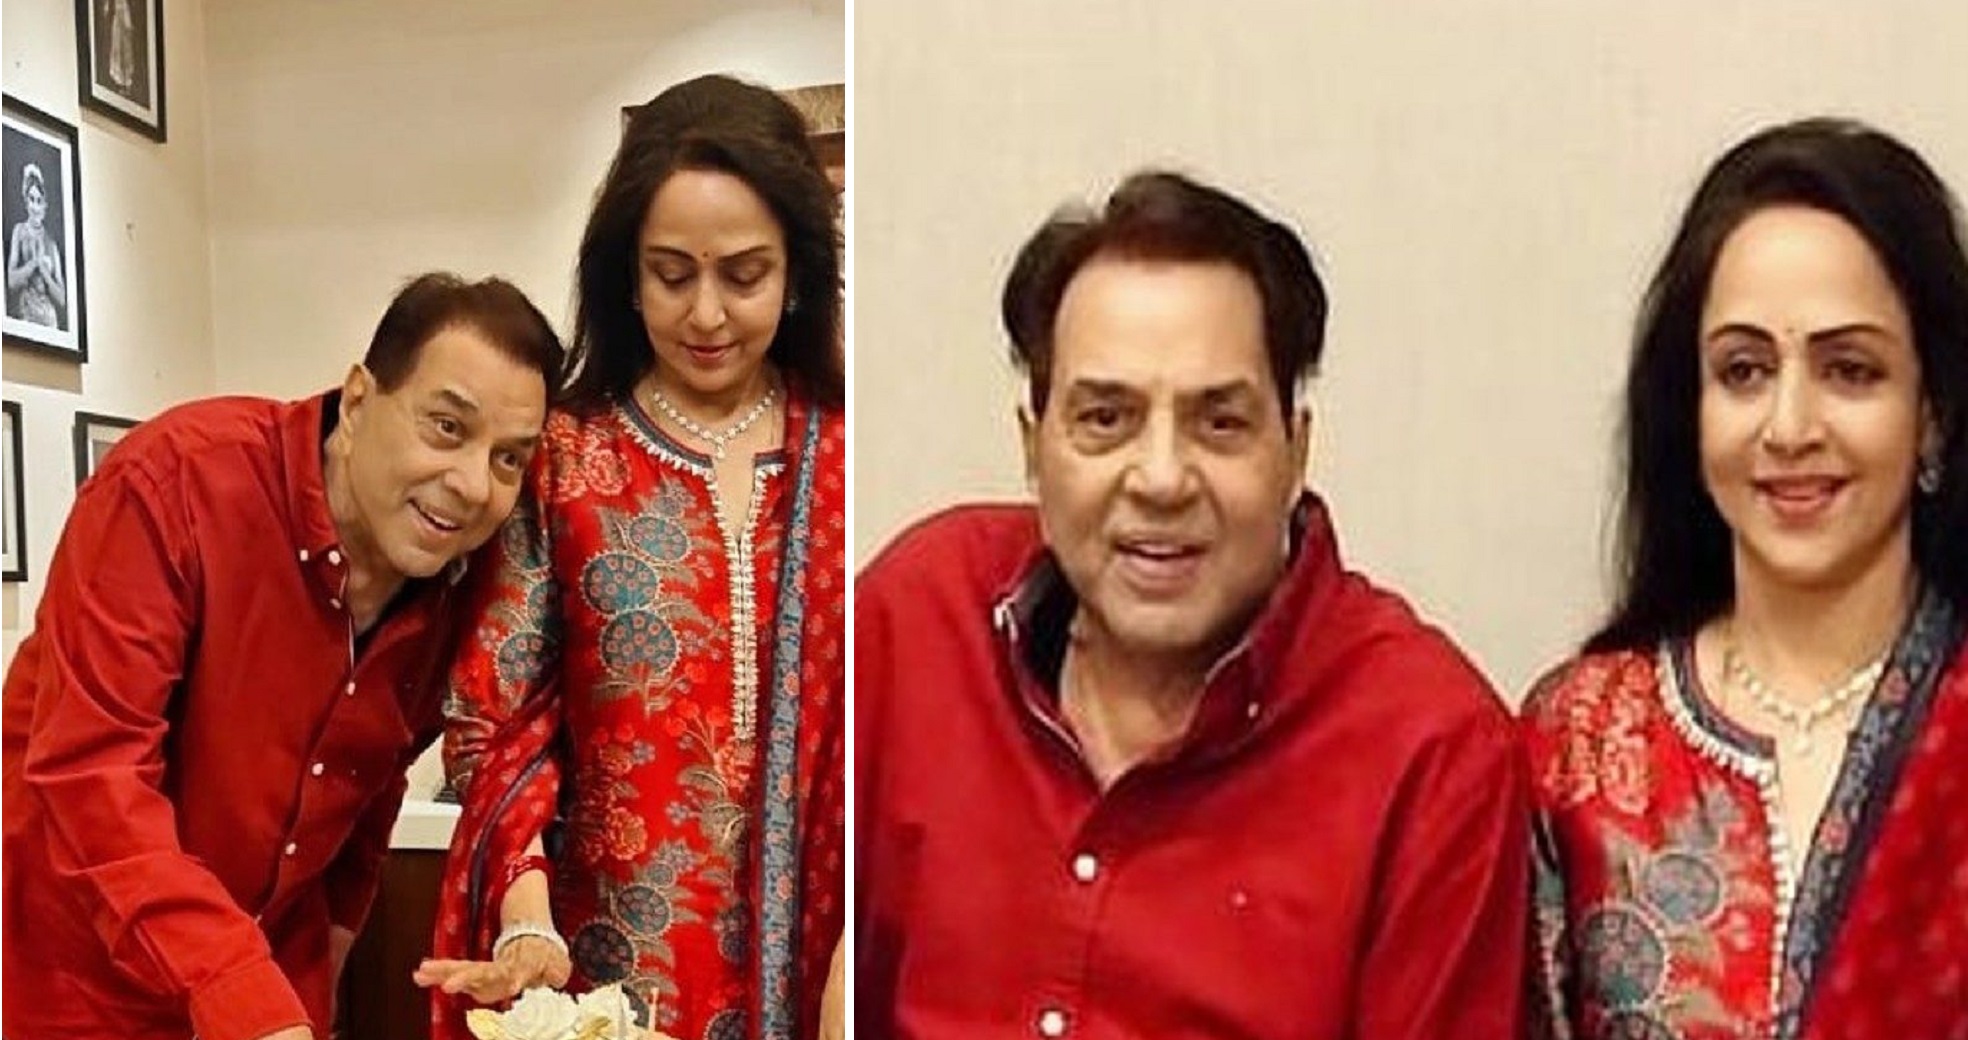 Hema Malini Celebrates 73rd Birthday Pairing Red Attire With Hubby Dharmendra